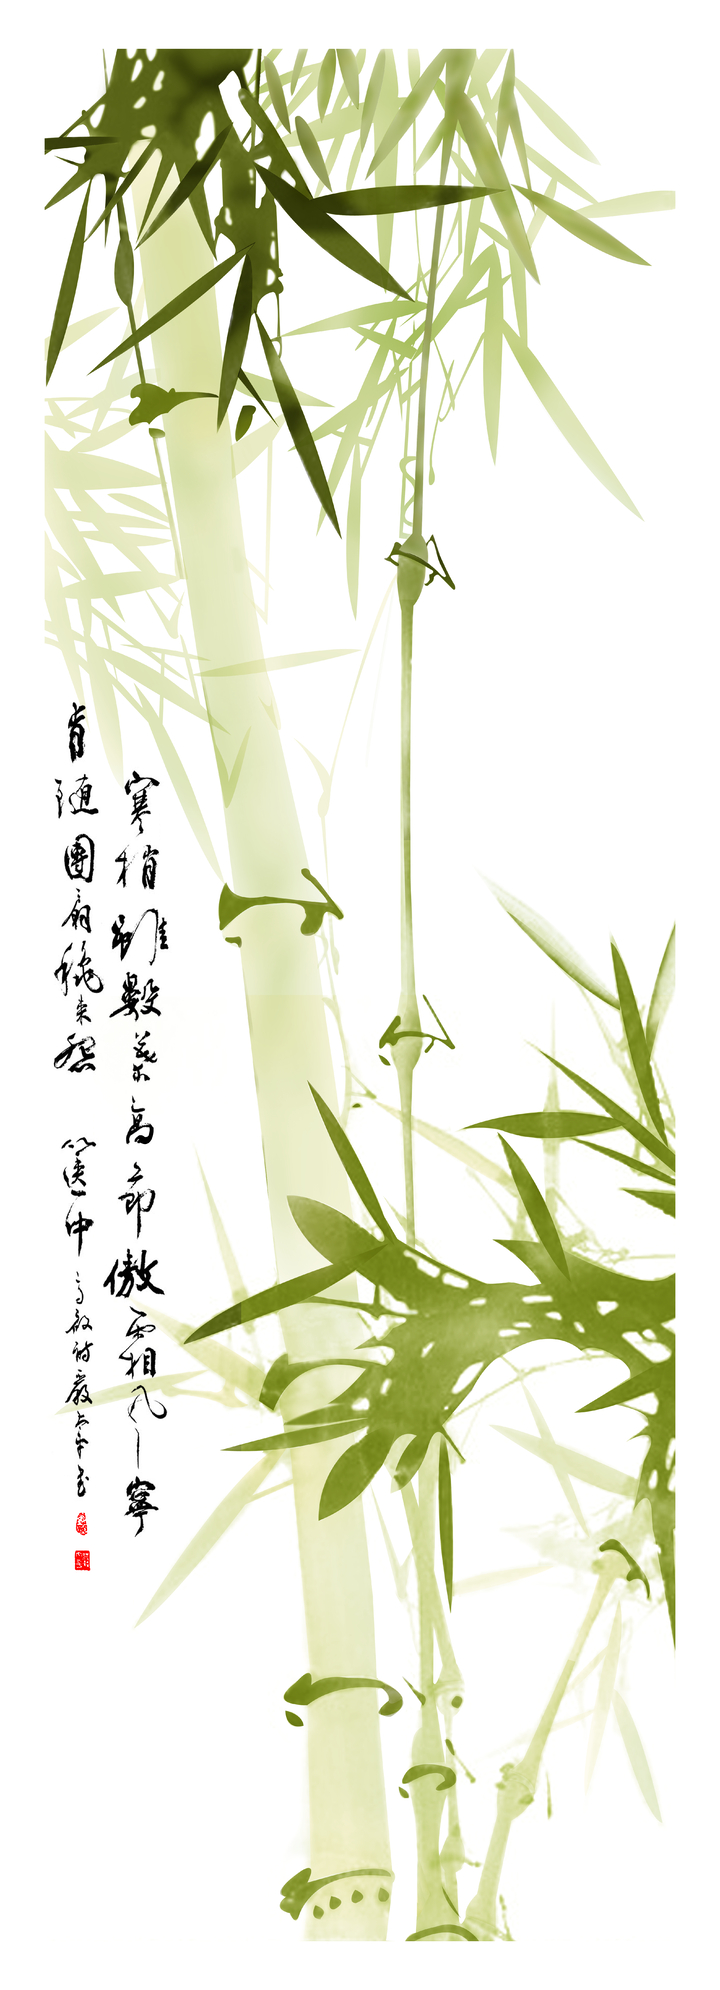 Xem hơn 48 ảnh về hình vẽ cây tre - daotaonec